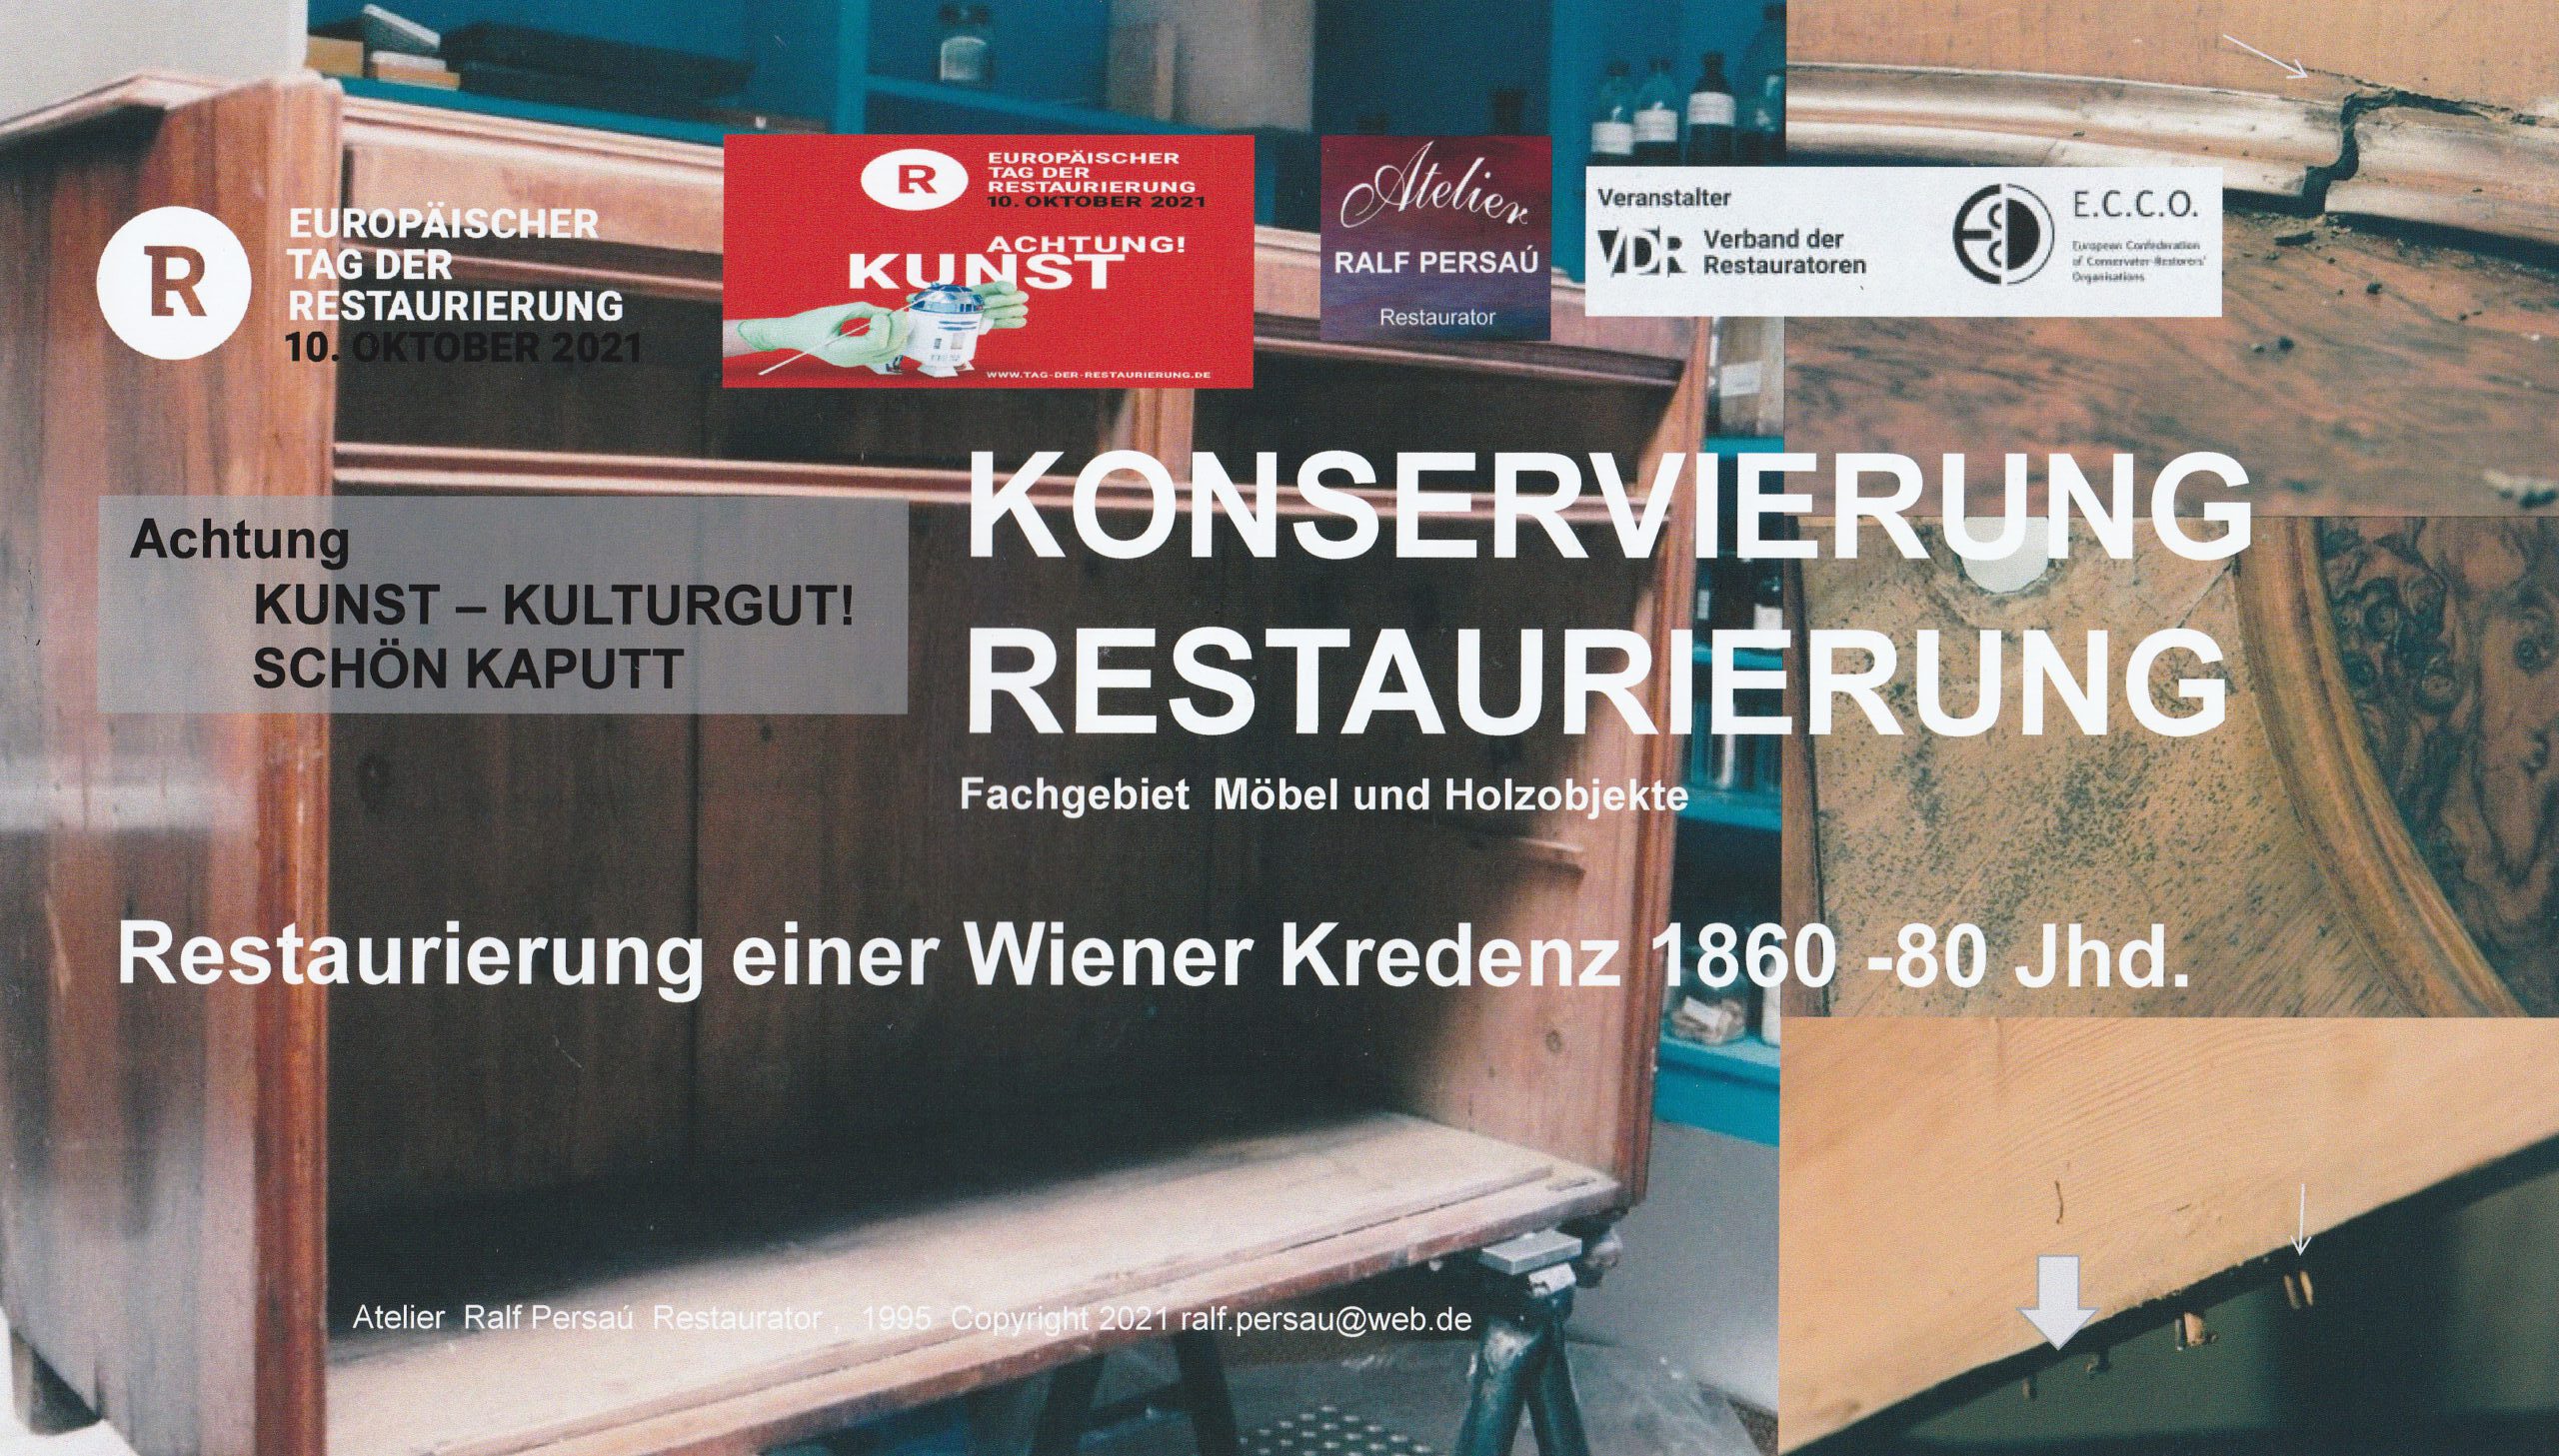 Klimageschädigte Wiener Kredenz Dokumentation Atelier Ralf Persau Restaurator. Konservierung-Restaurierung von Möbel und Holzobjekte.